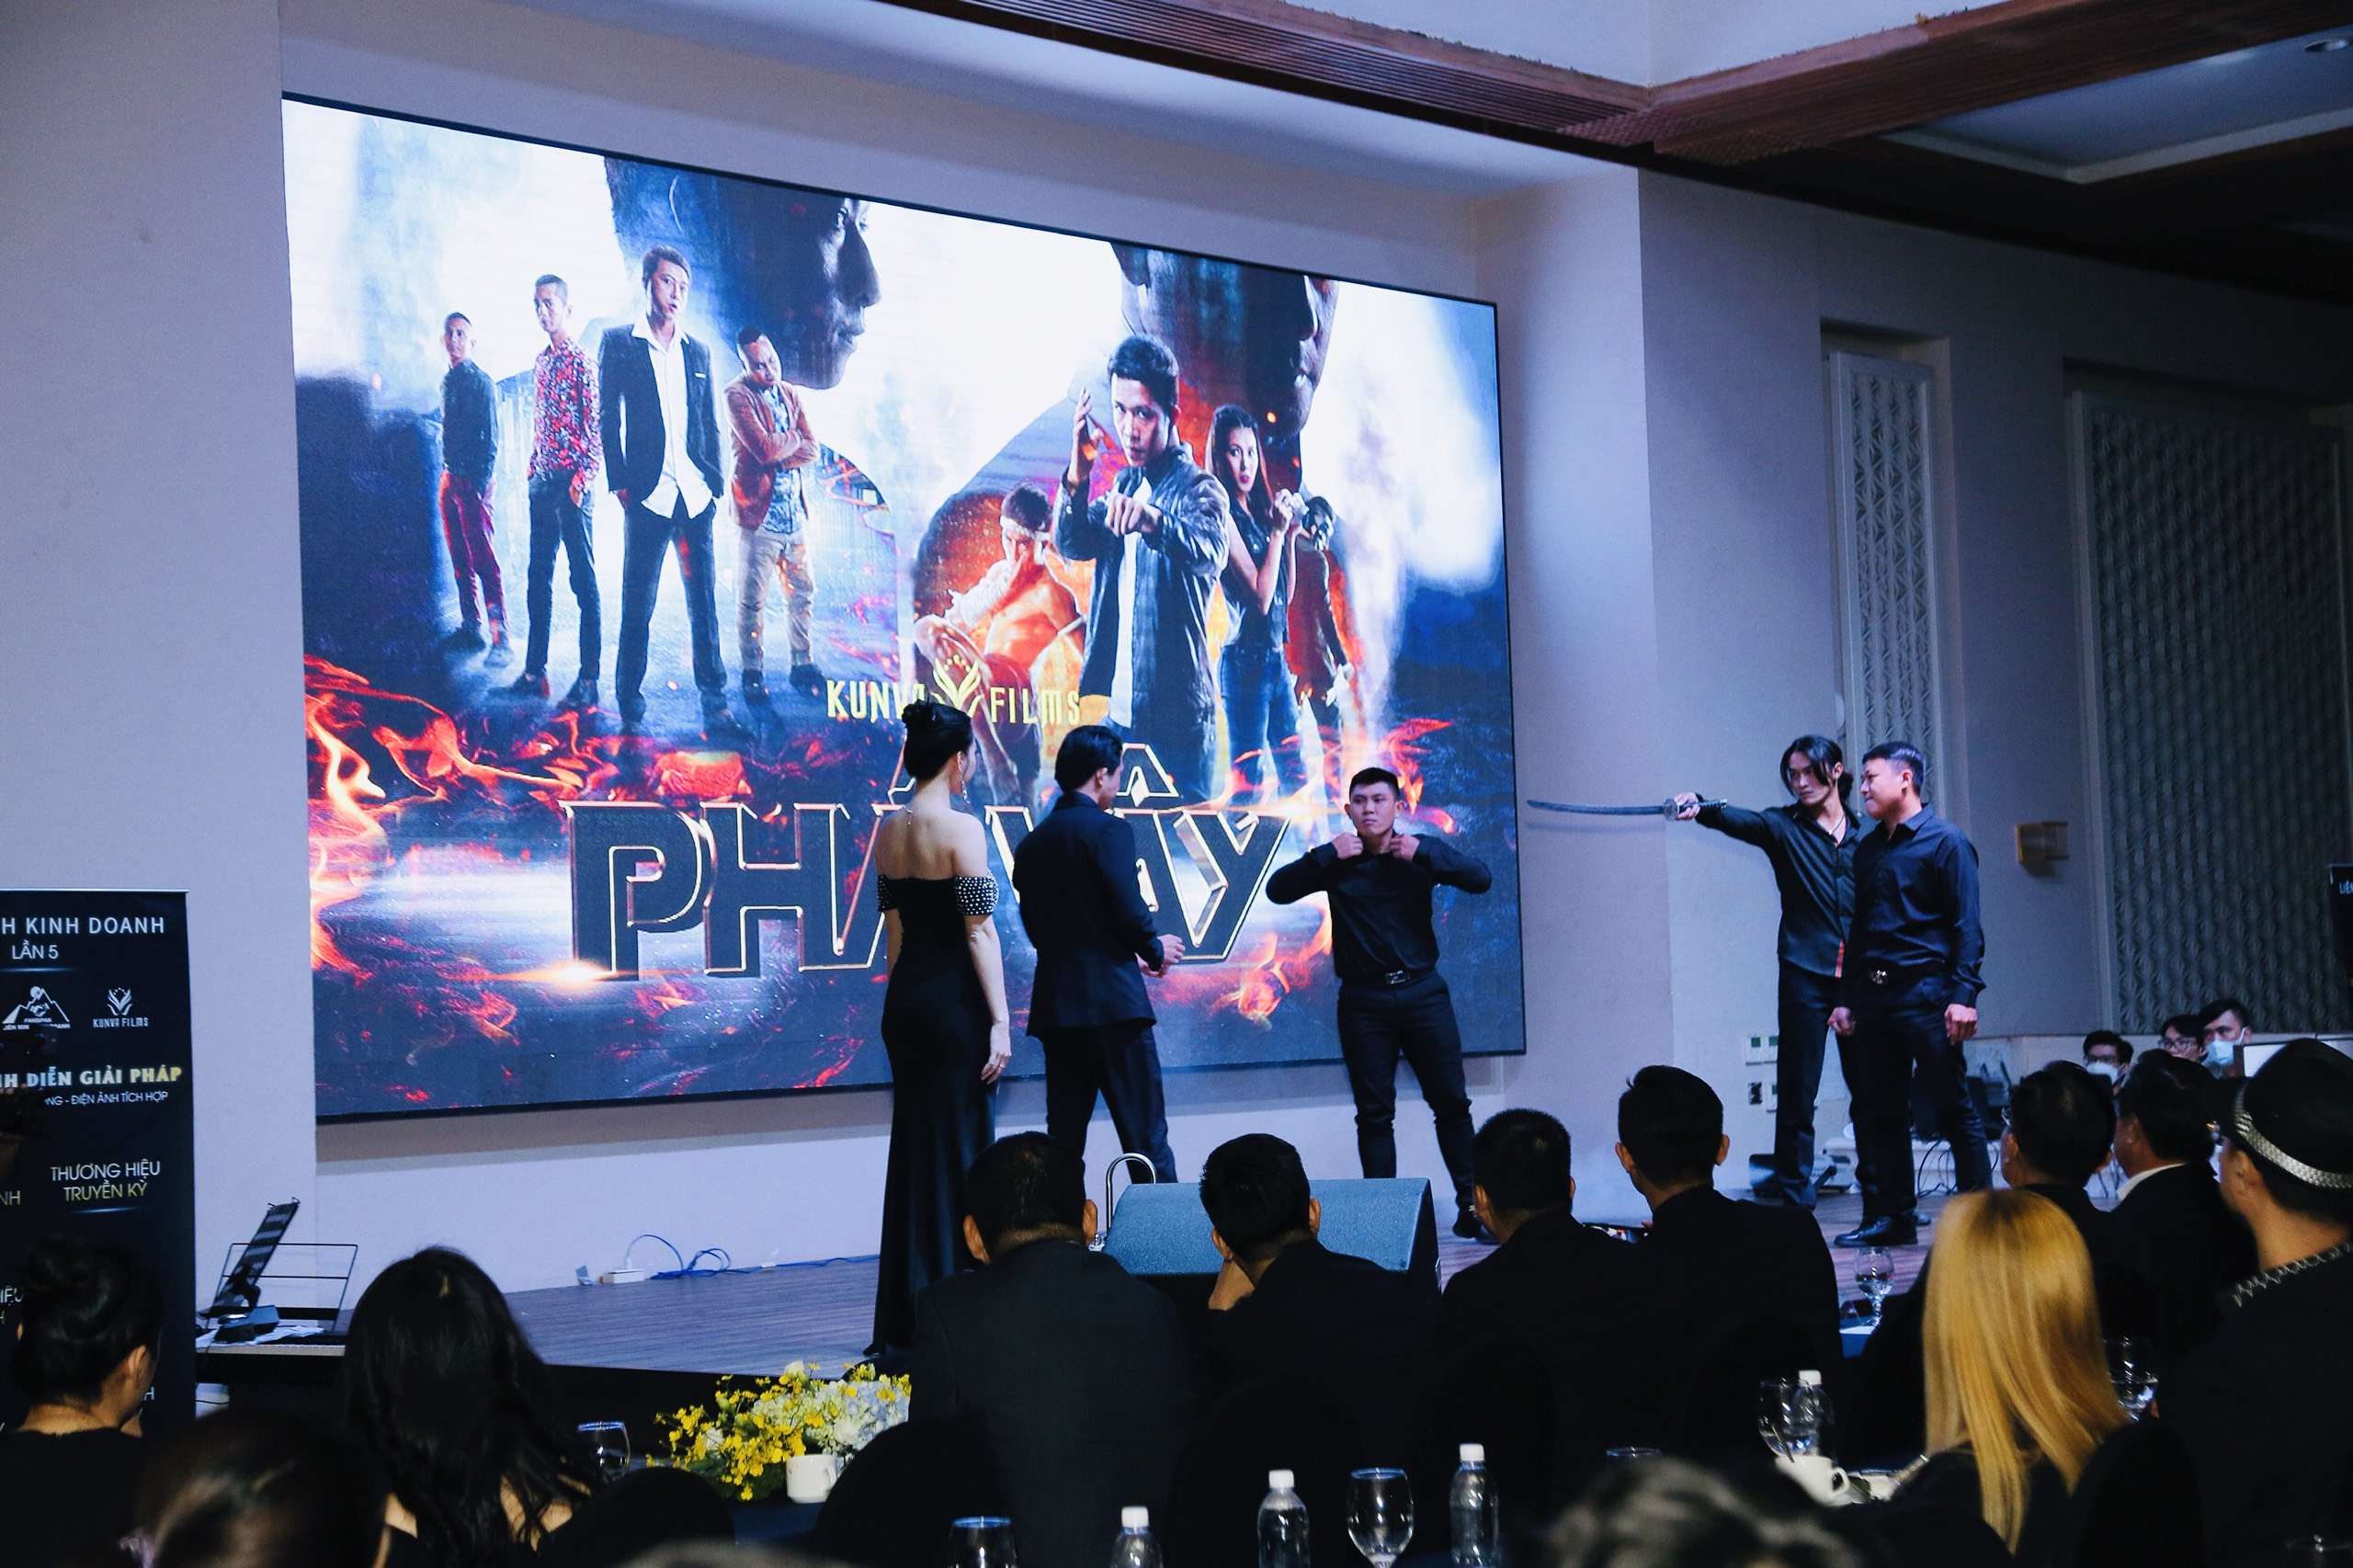 Kunva Films giới thiệu series phim điện ảnh Phá Vây đến các doanh nghiệp tại Liên Minh Kinh Doanh lần 5.